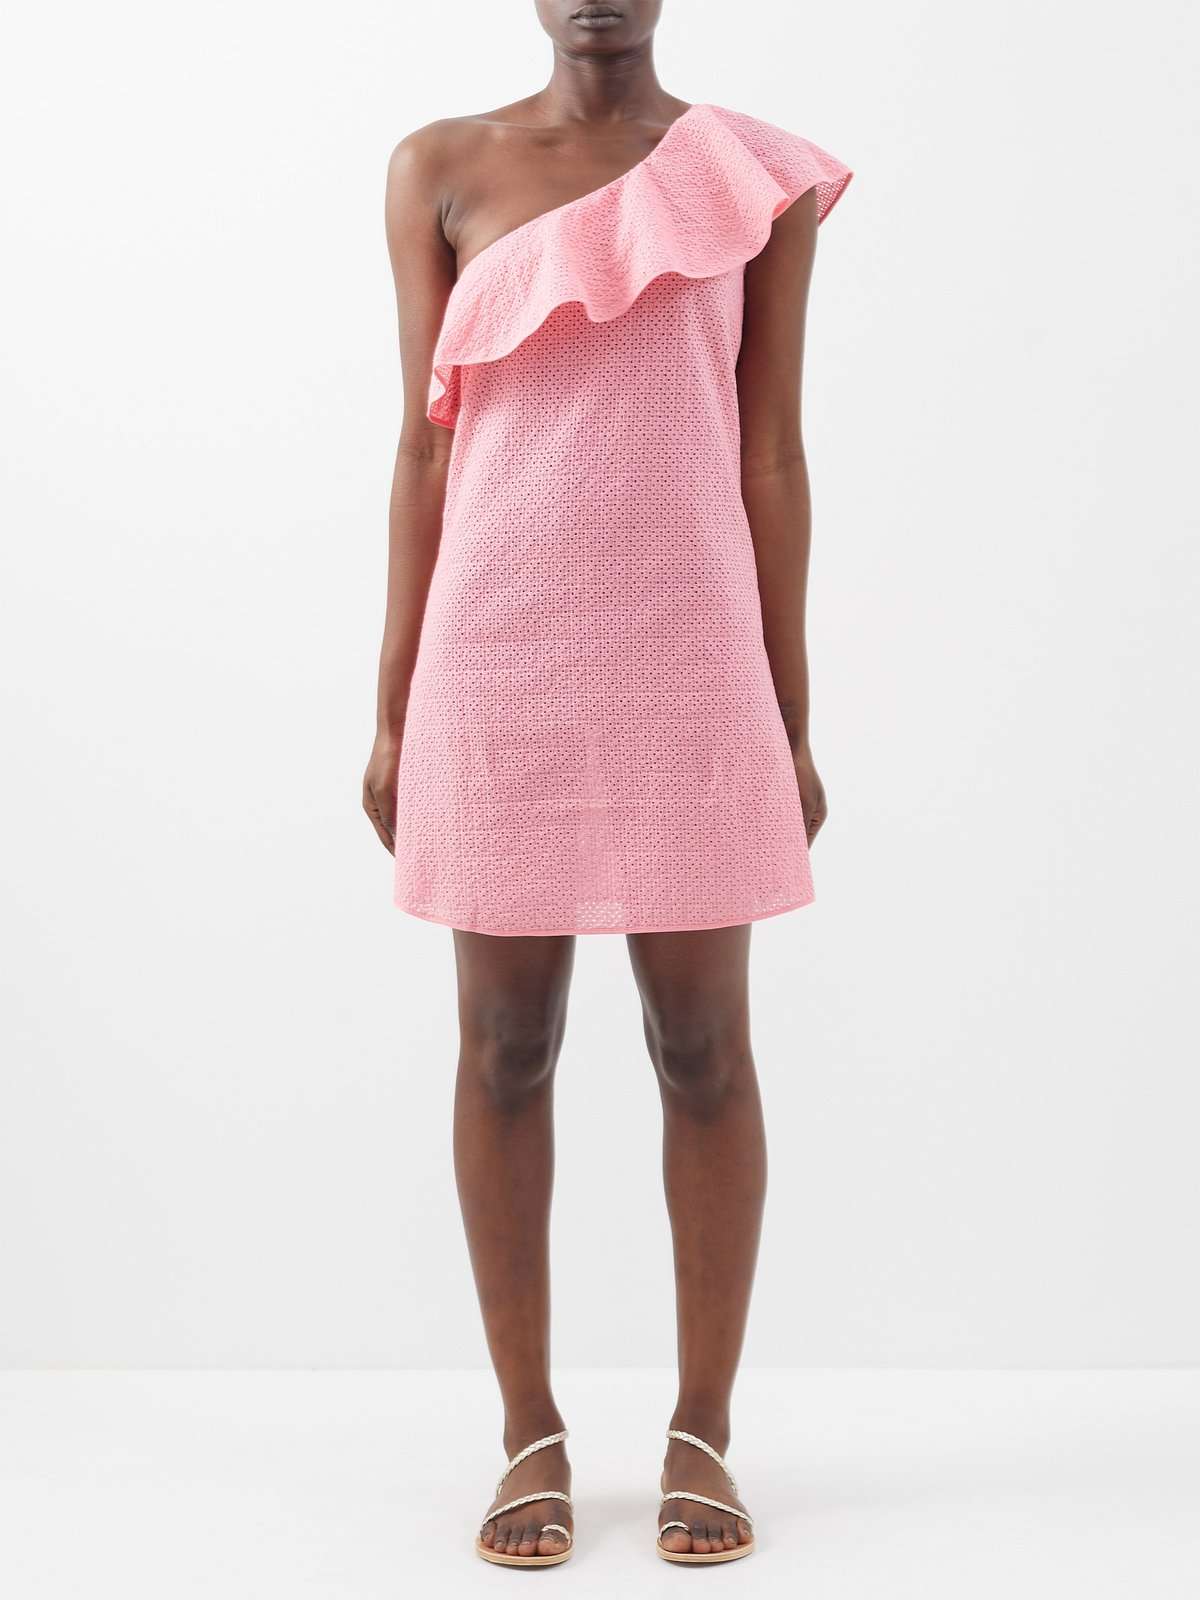 Хлопковое мини-платье Santa Barbara с открытыми плечами